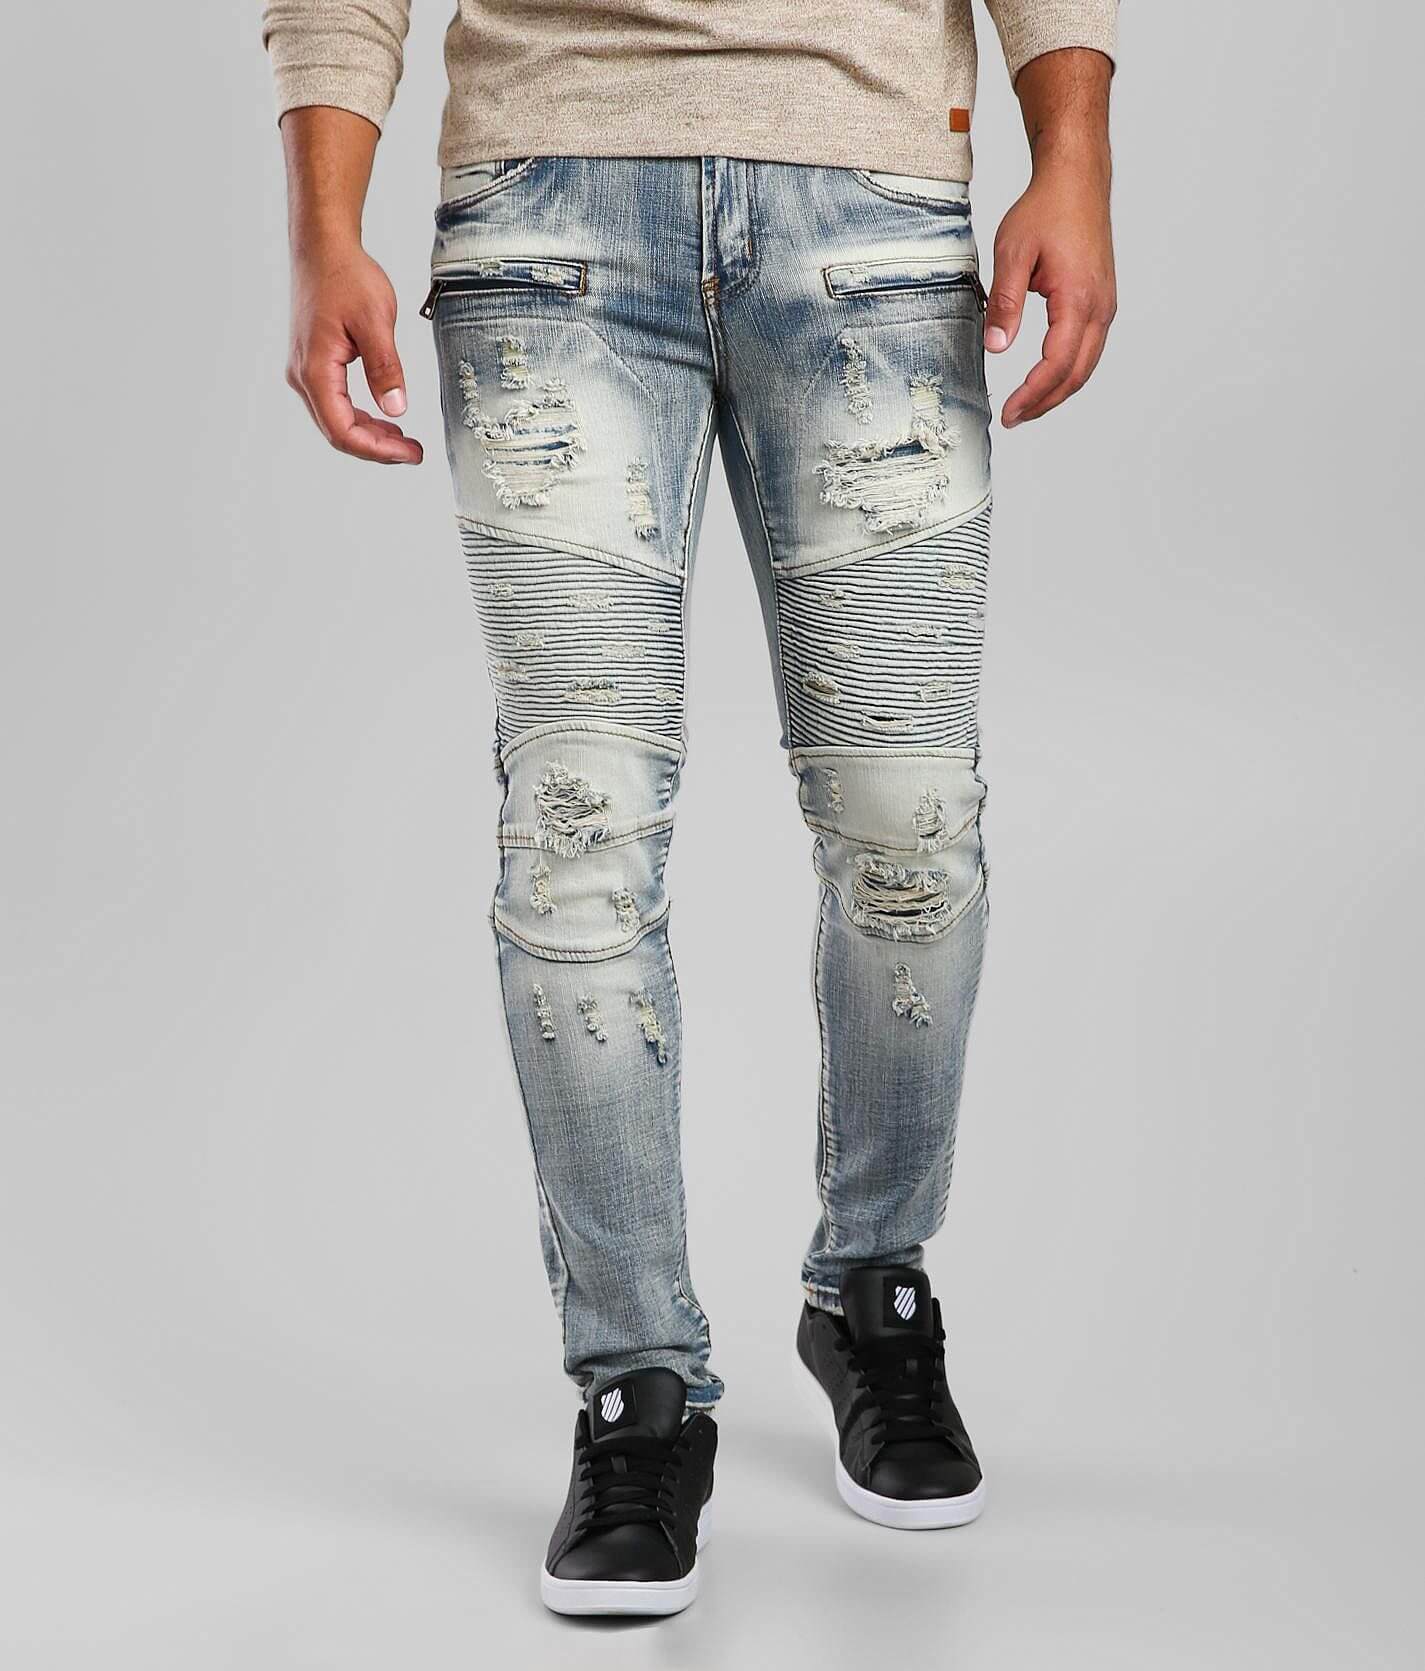 PREME Indigo Moto Skinny Stretch Jean - Men's Jeans in Male Indigo